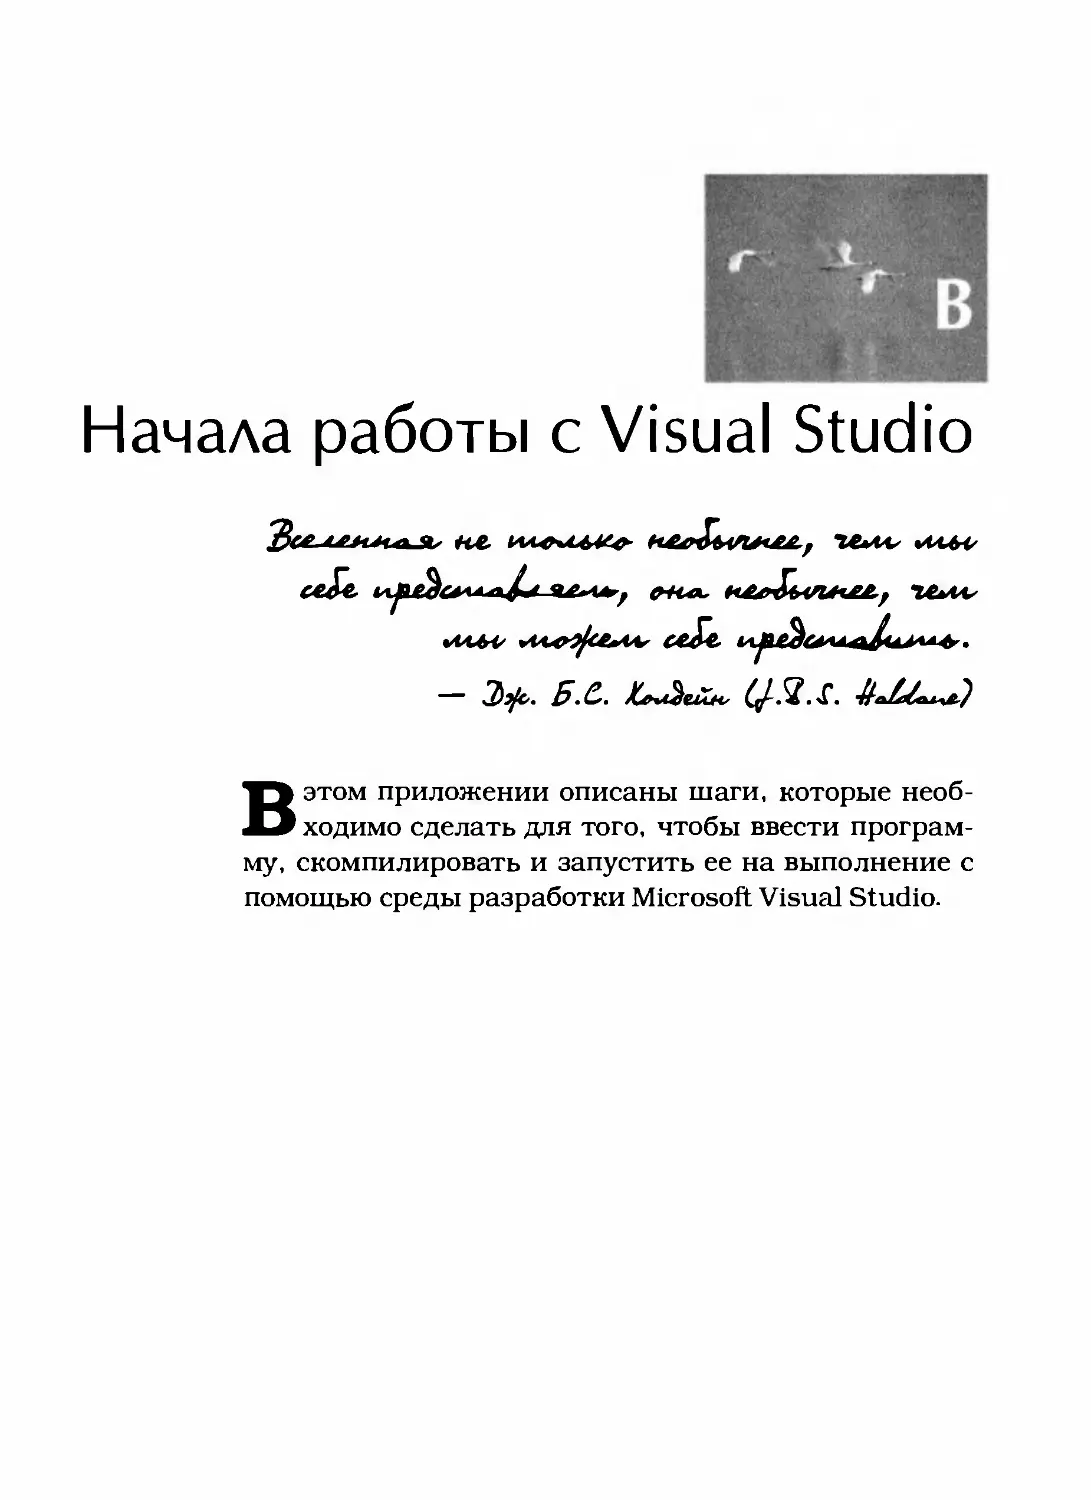 Приложение В. Начала работы с Visual Studio